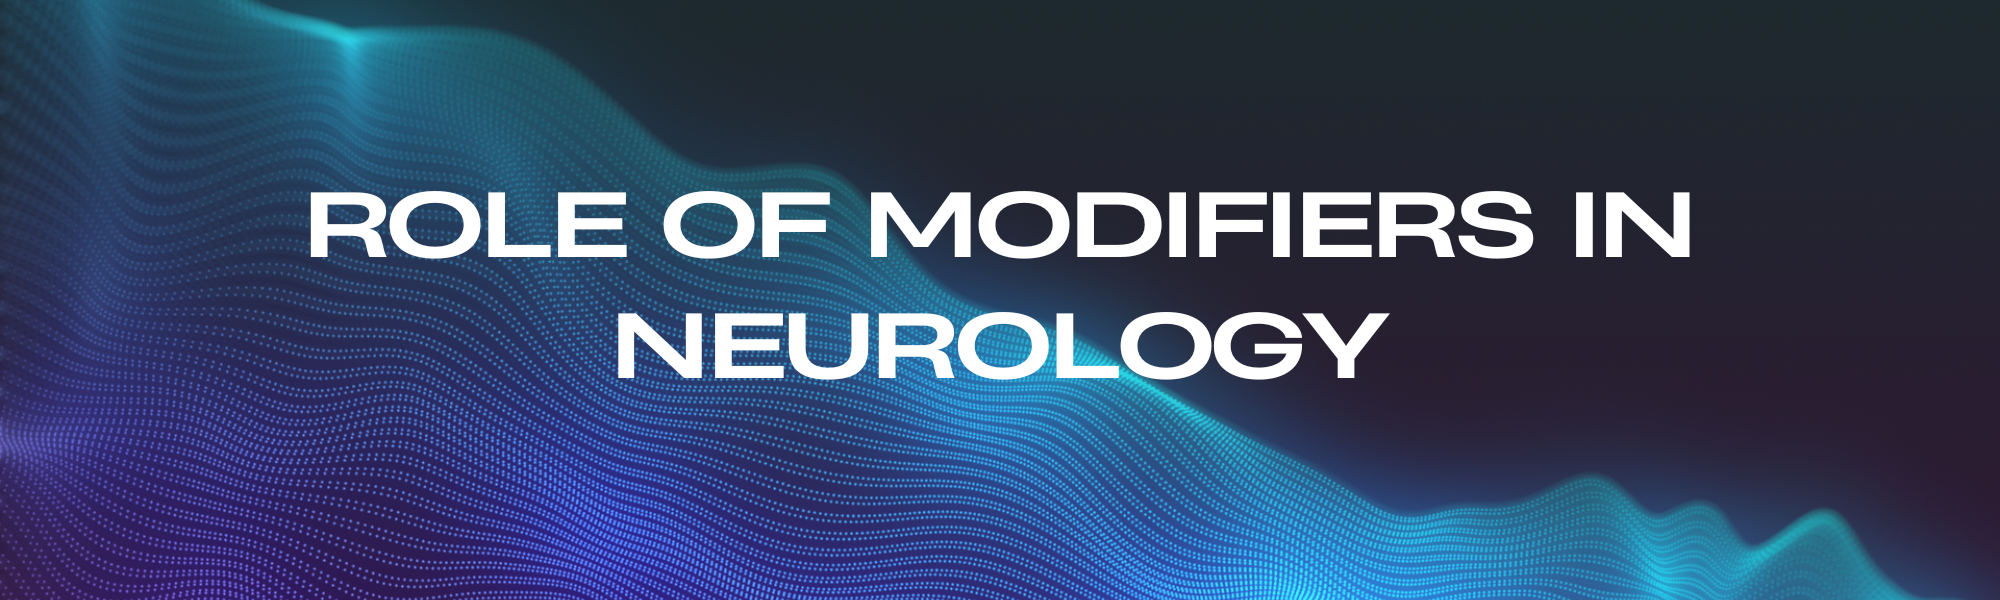 Role of Modifiers in Neurology